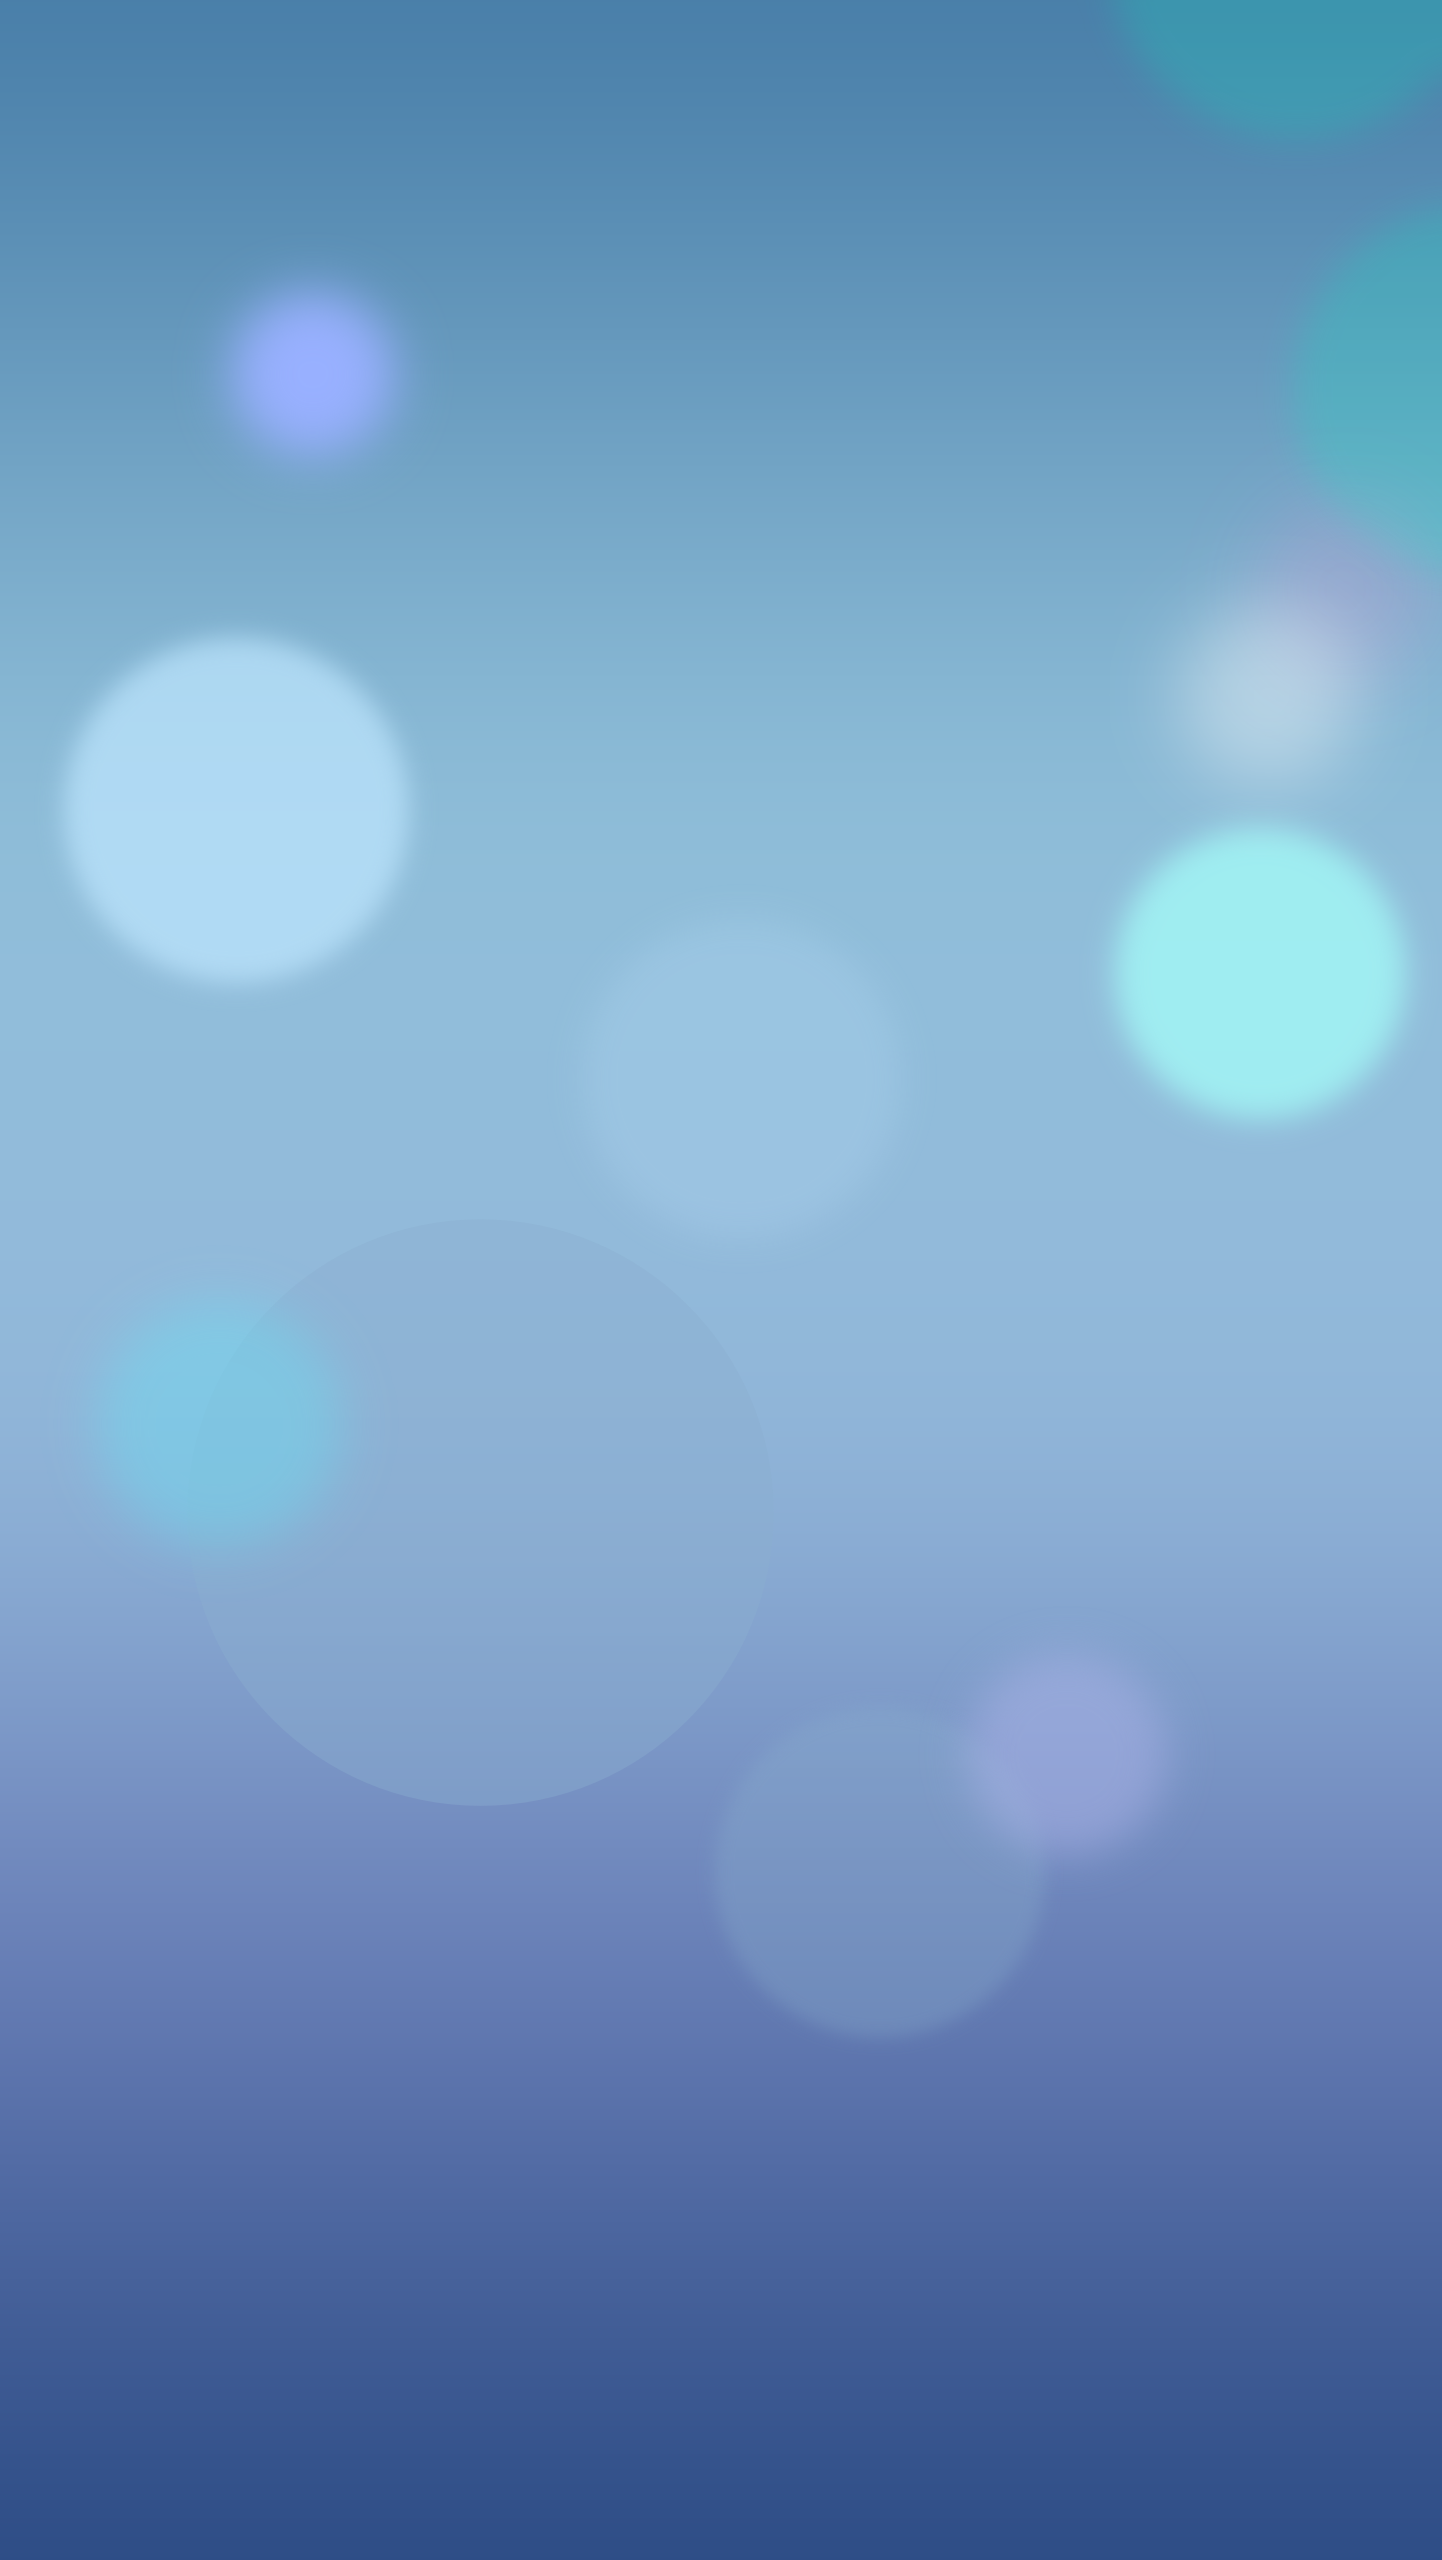 iOS 6 Wallpaper HD - WallpaperSafari